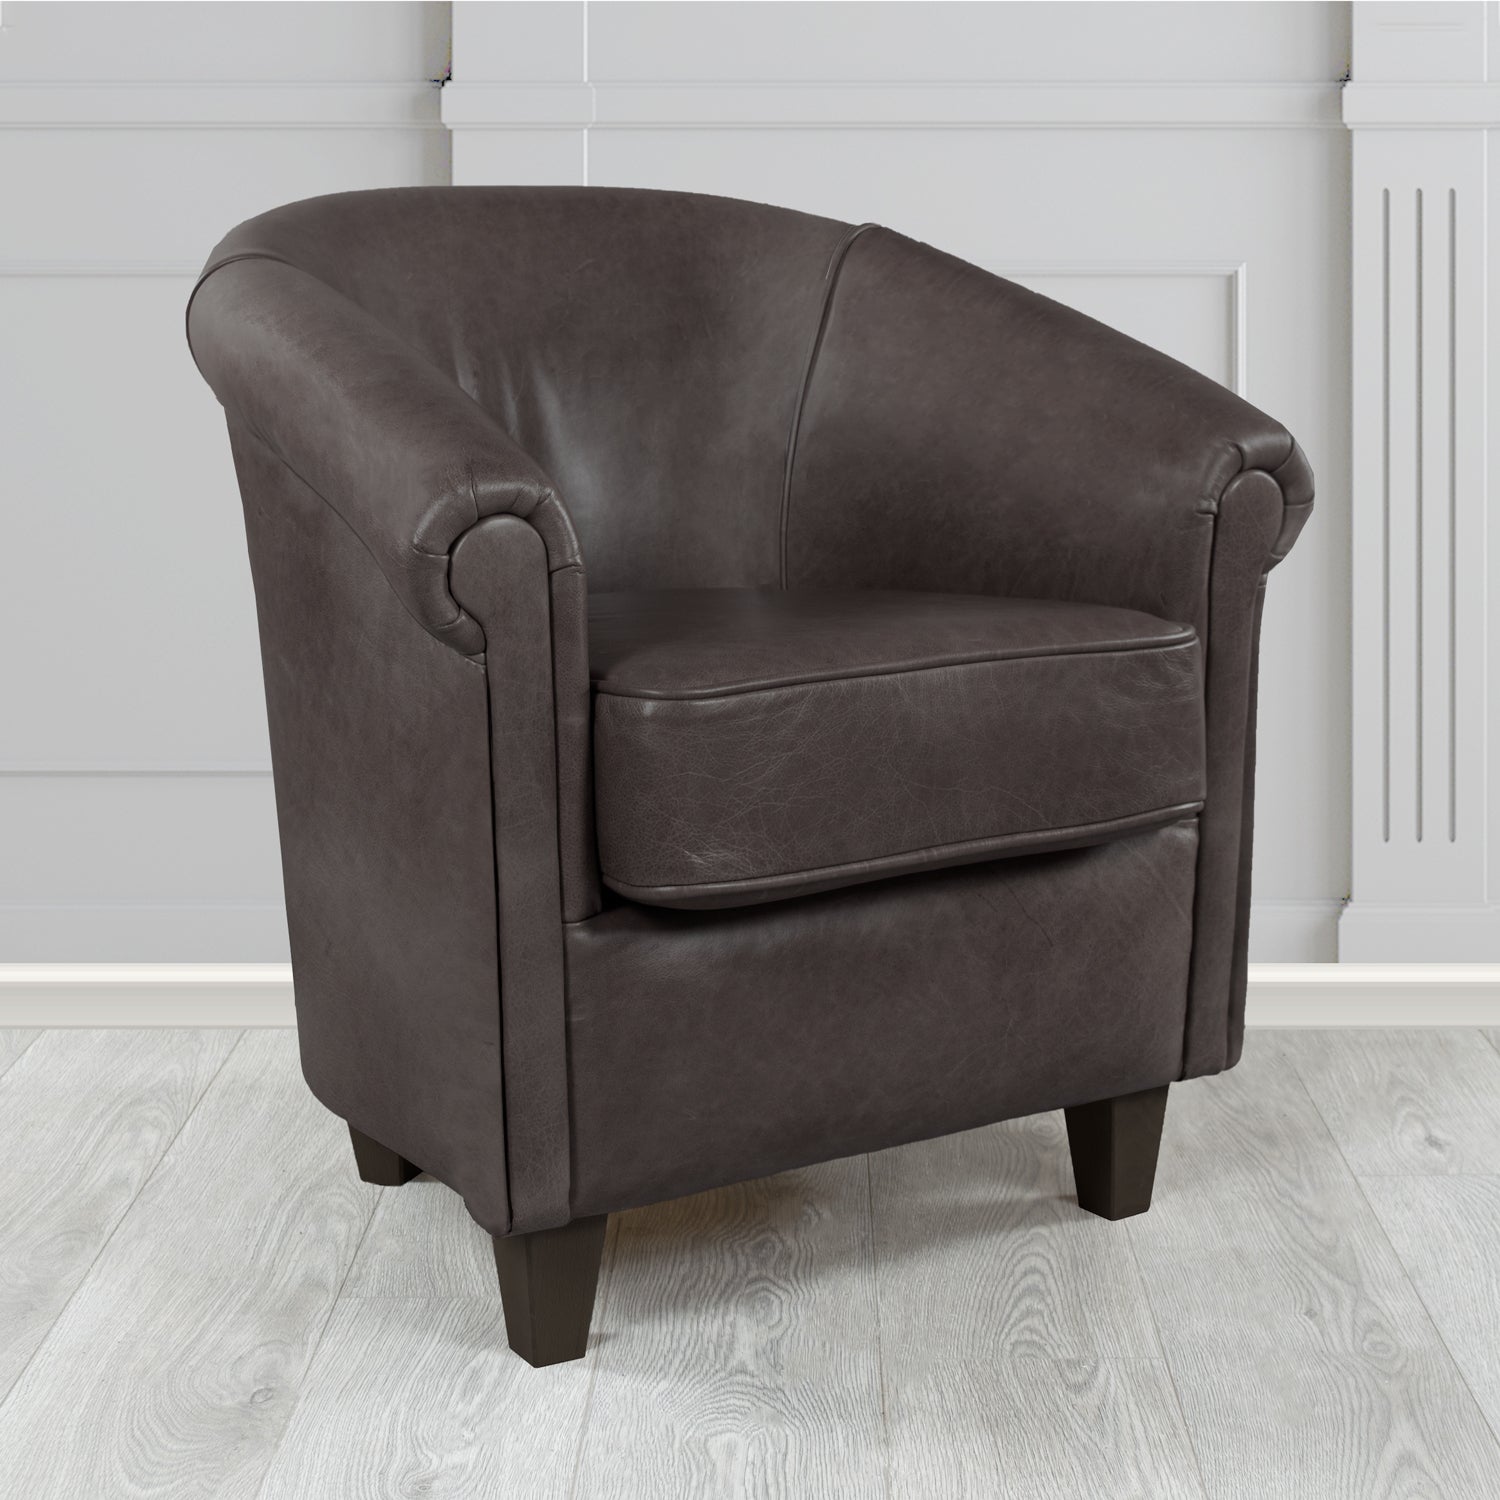 Siena Crib 5 Old English Smoke Genuine Leather Tub Chair (4683640340522)